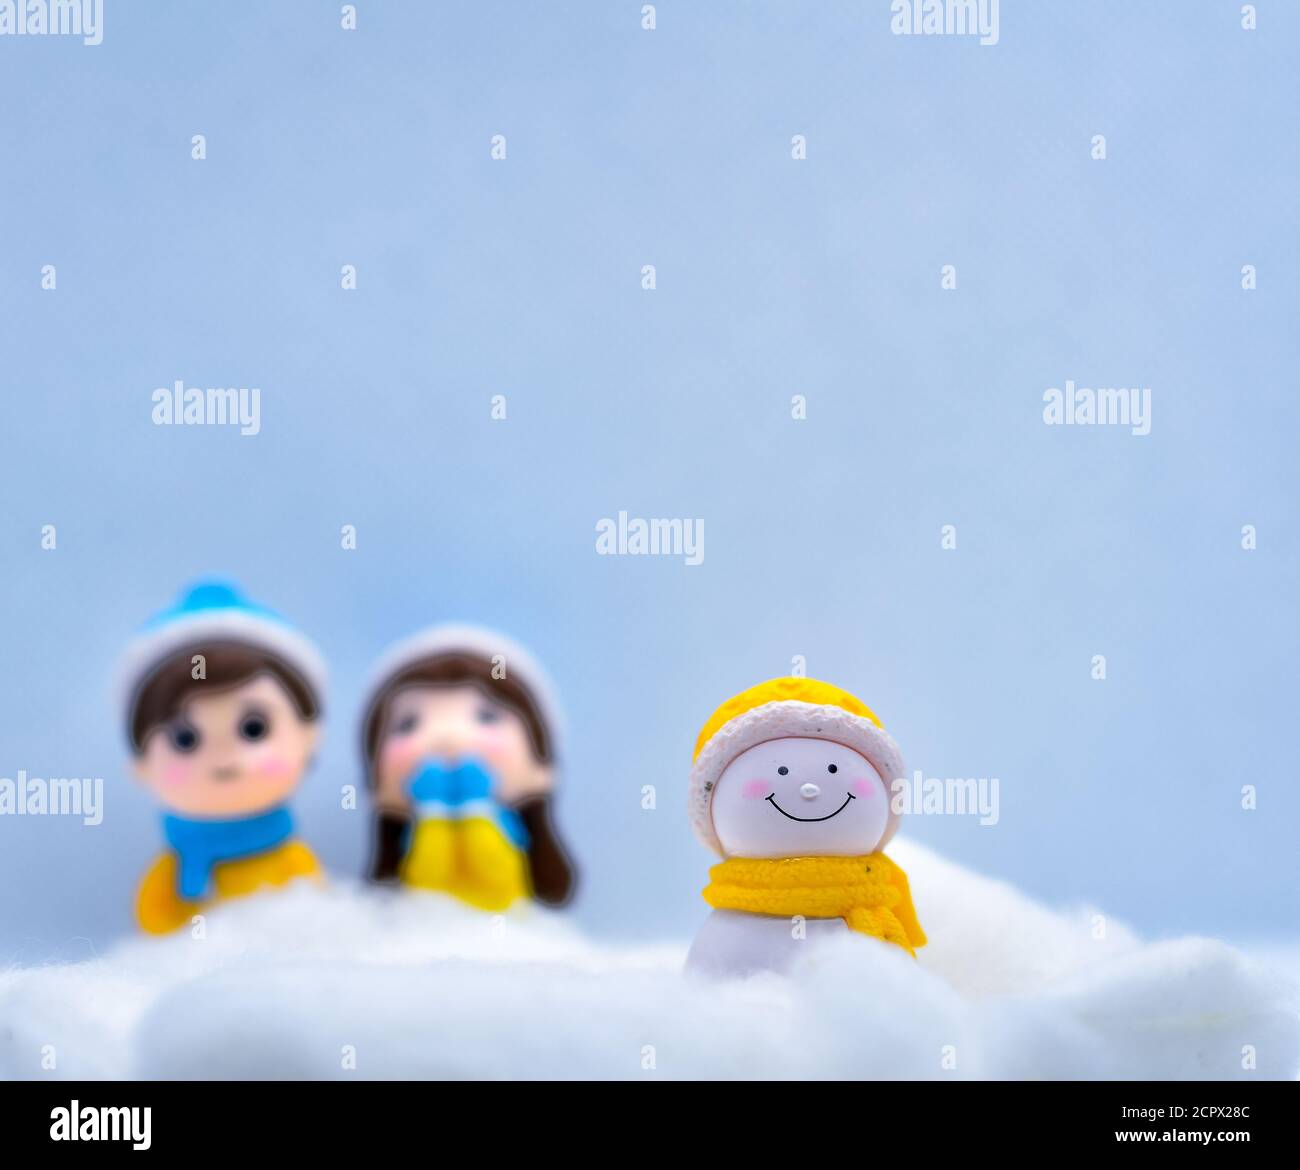 Tourisme et Voyage concept: Petit bonhomme de neige miniature dans la neige d'hiver avec couple en arrière-plan Banque D'Images